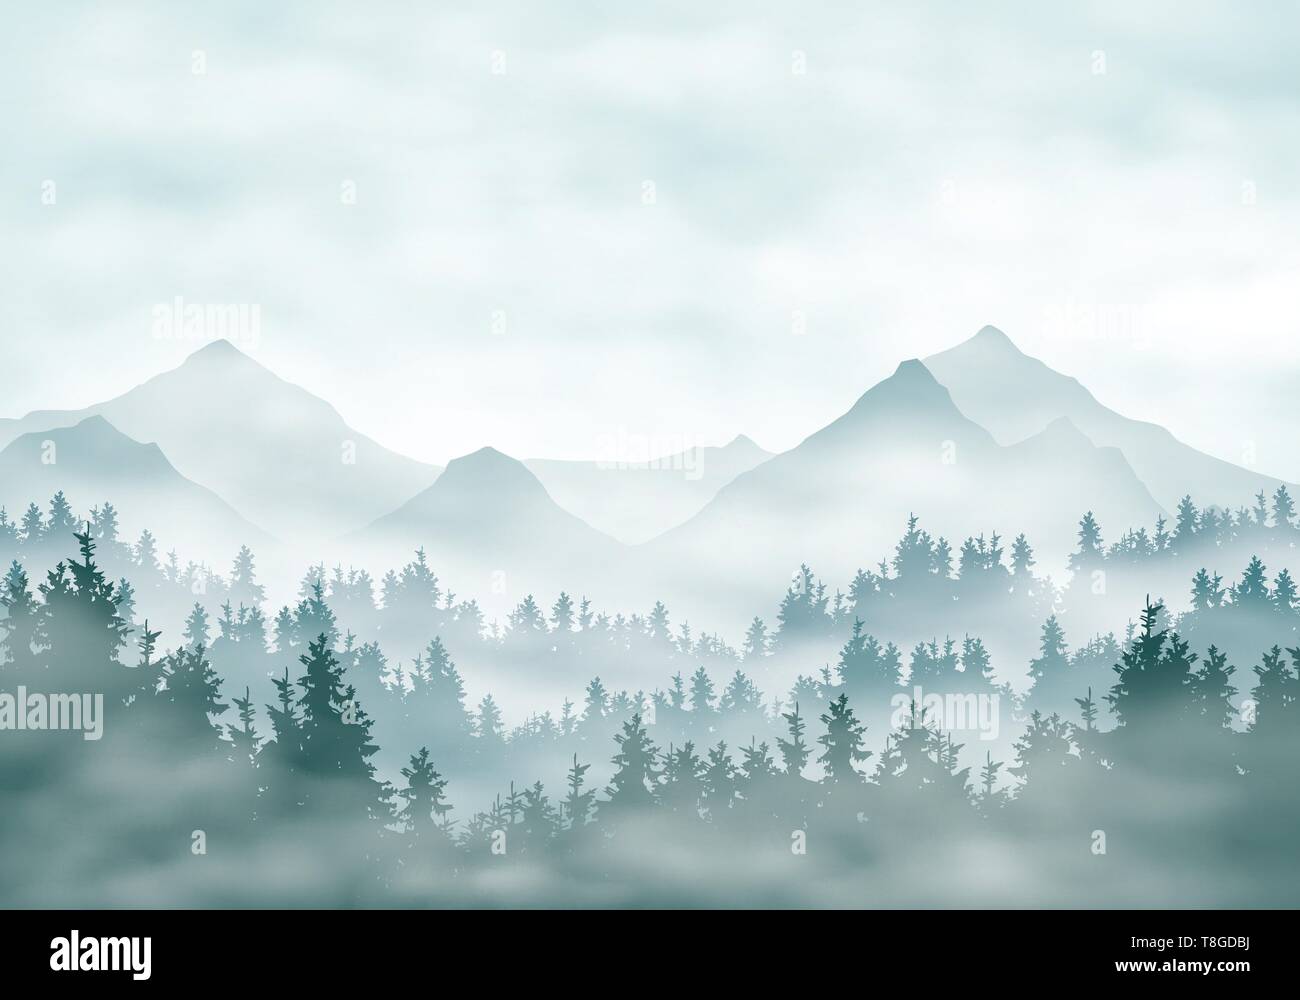 Realistische Darstellung der Landschaft Silhouetten mit Wald- und Nadelbäume. Nebel Nebel oder Wolken unter grün-blauen Himmel - Vektor Stock Vektor